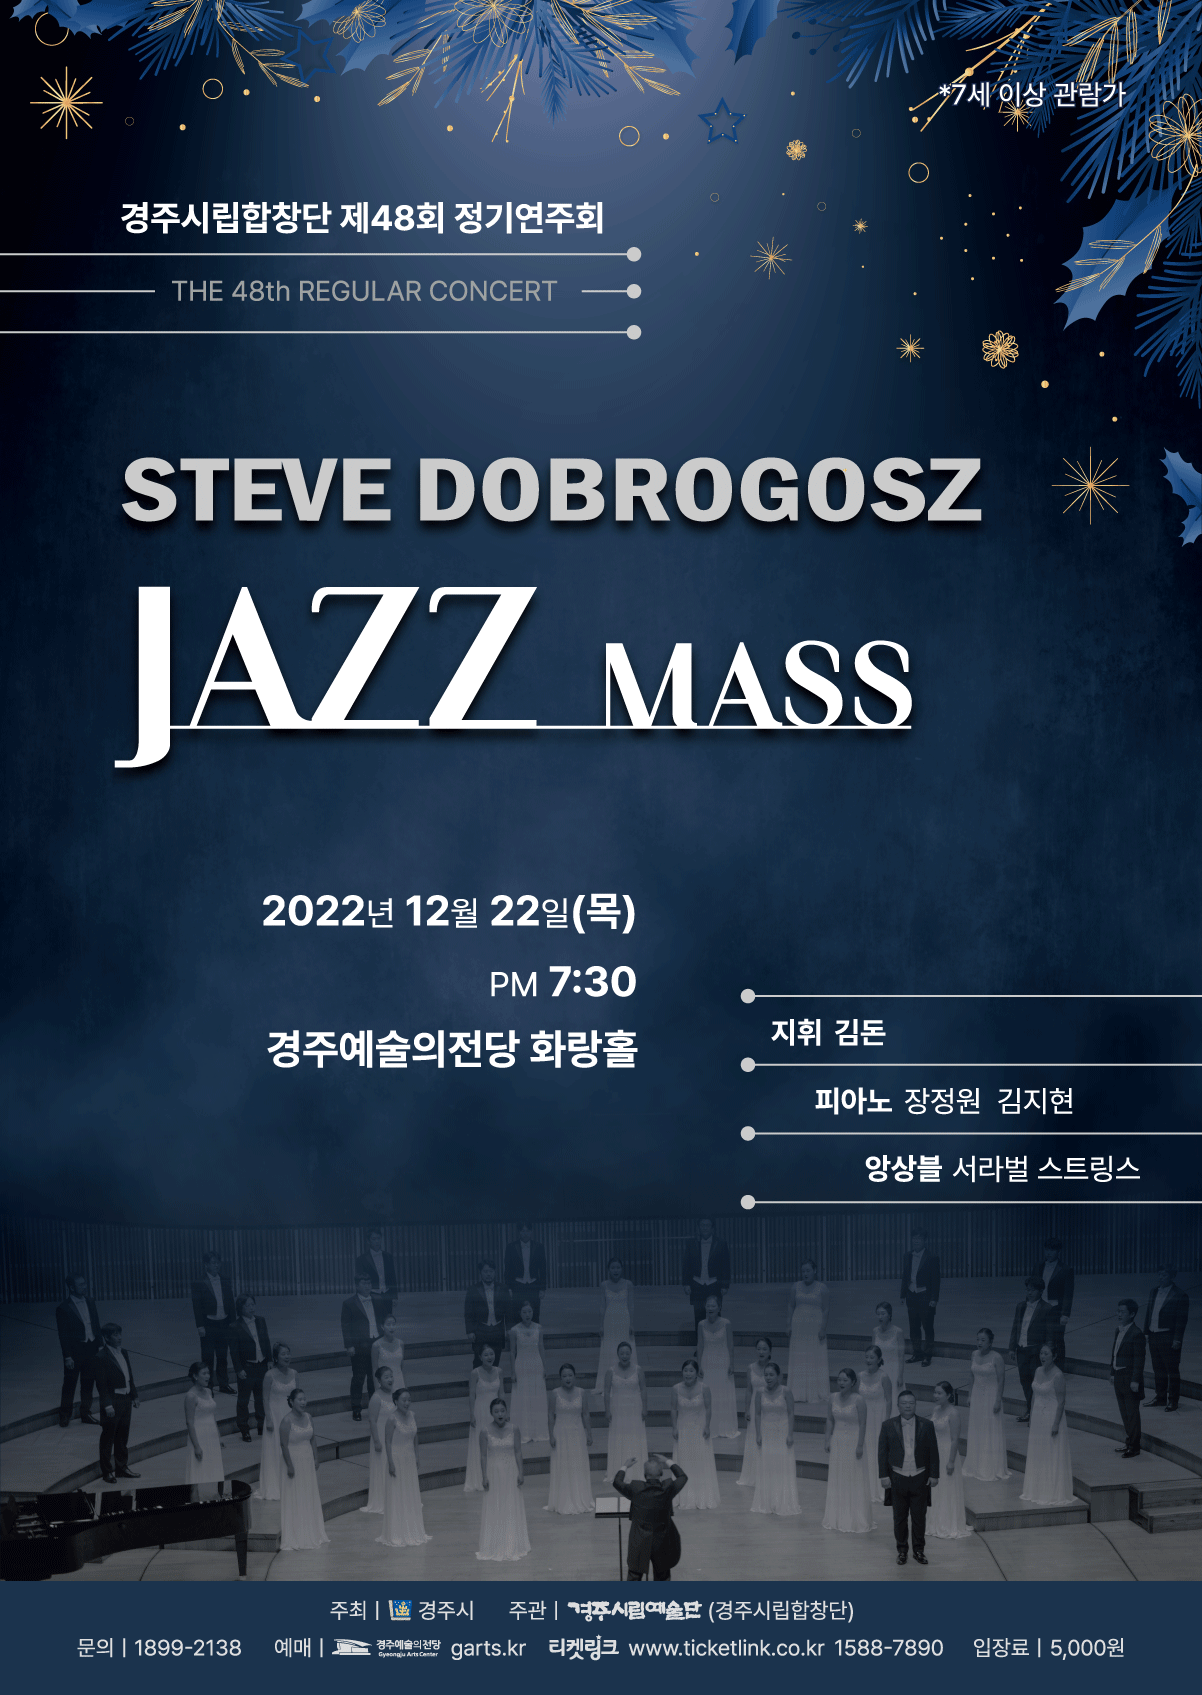 [대관]경주시립합창단 제48회 정기연주회 - STEVE DOBROGOSZ JAZZ MASS